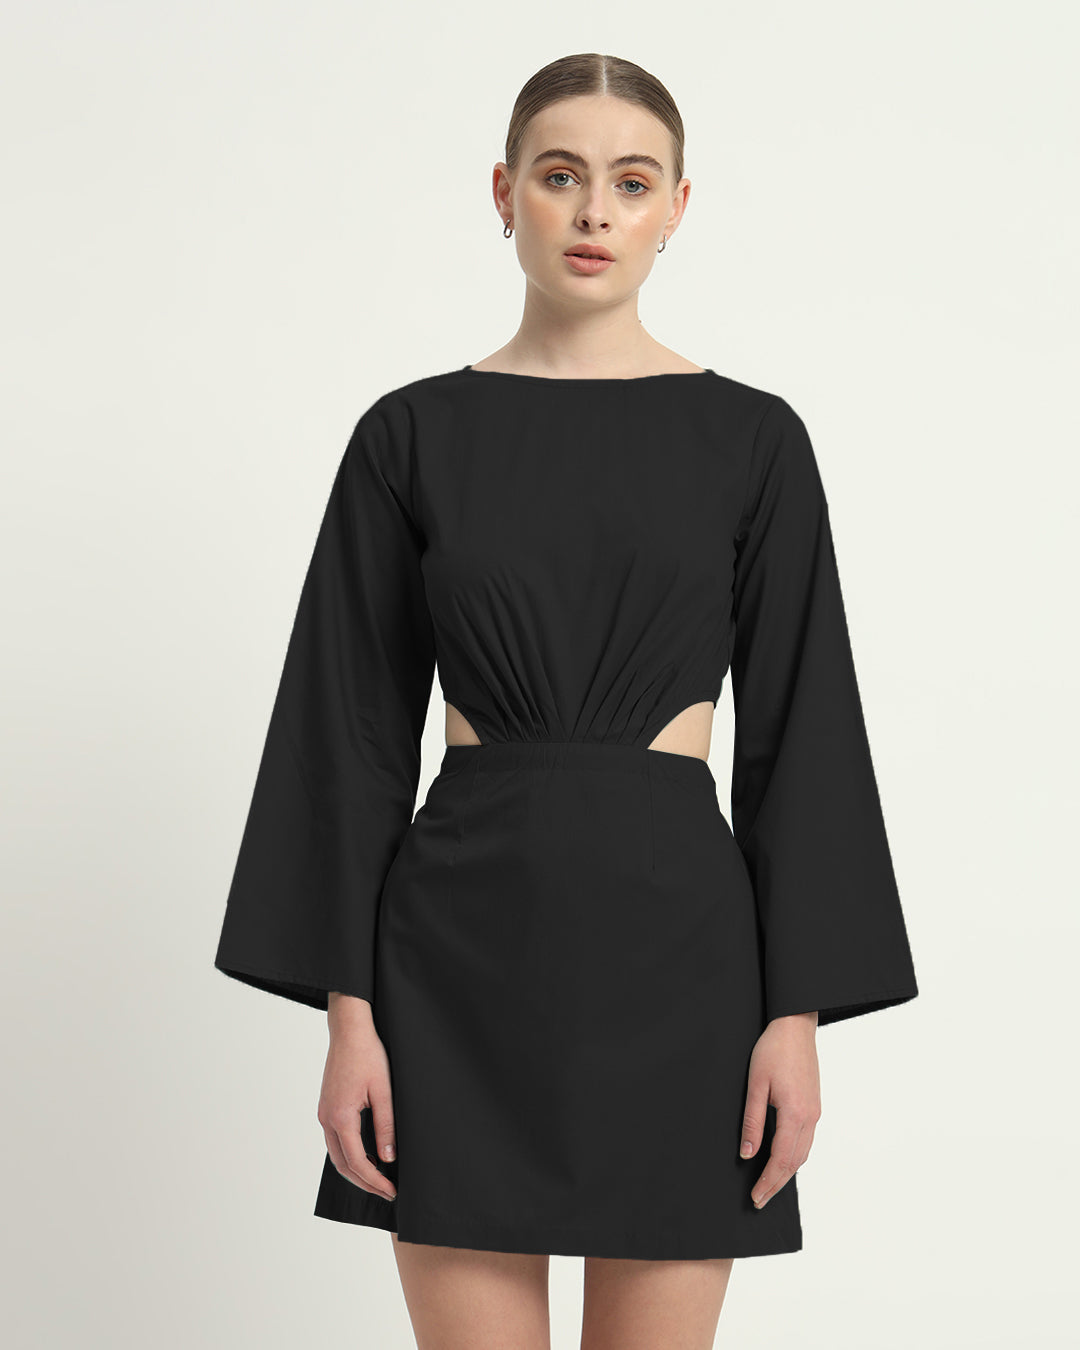 The Eloy Noir Cotton Dress